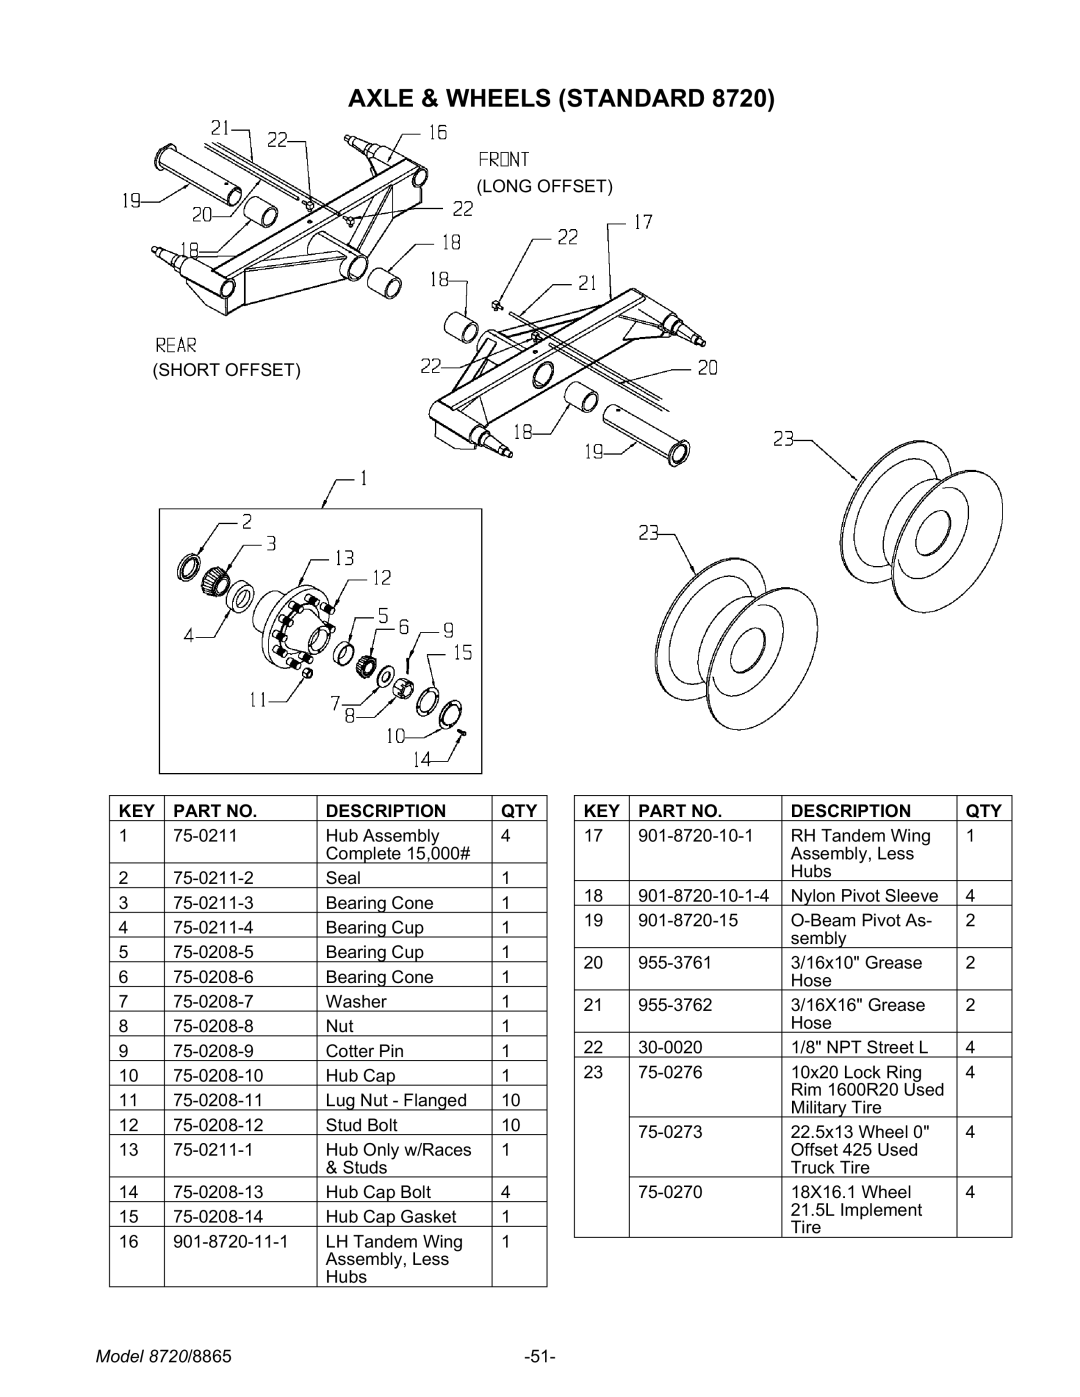 Meyer 8865, 8720 manual Axle & Wheels Standard, KEY Description QTY 